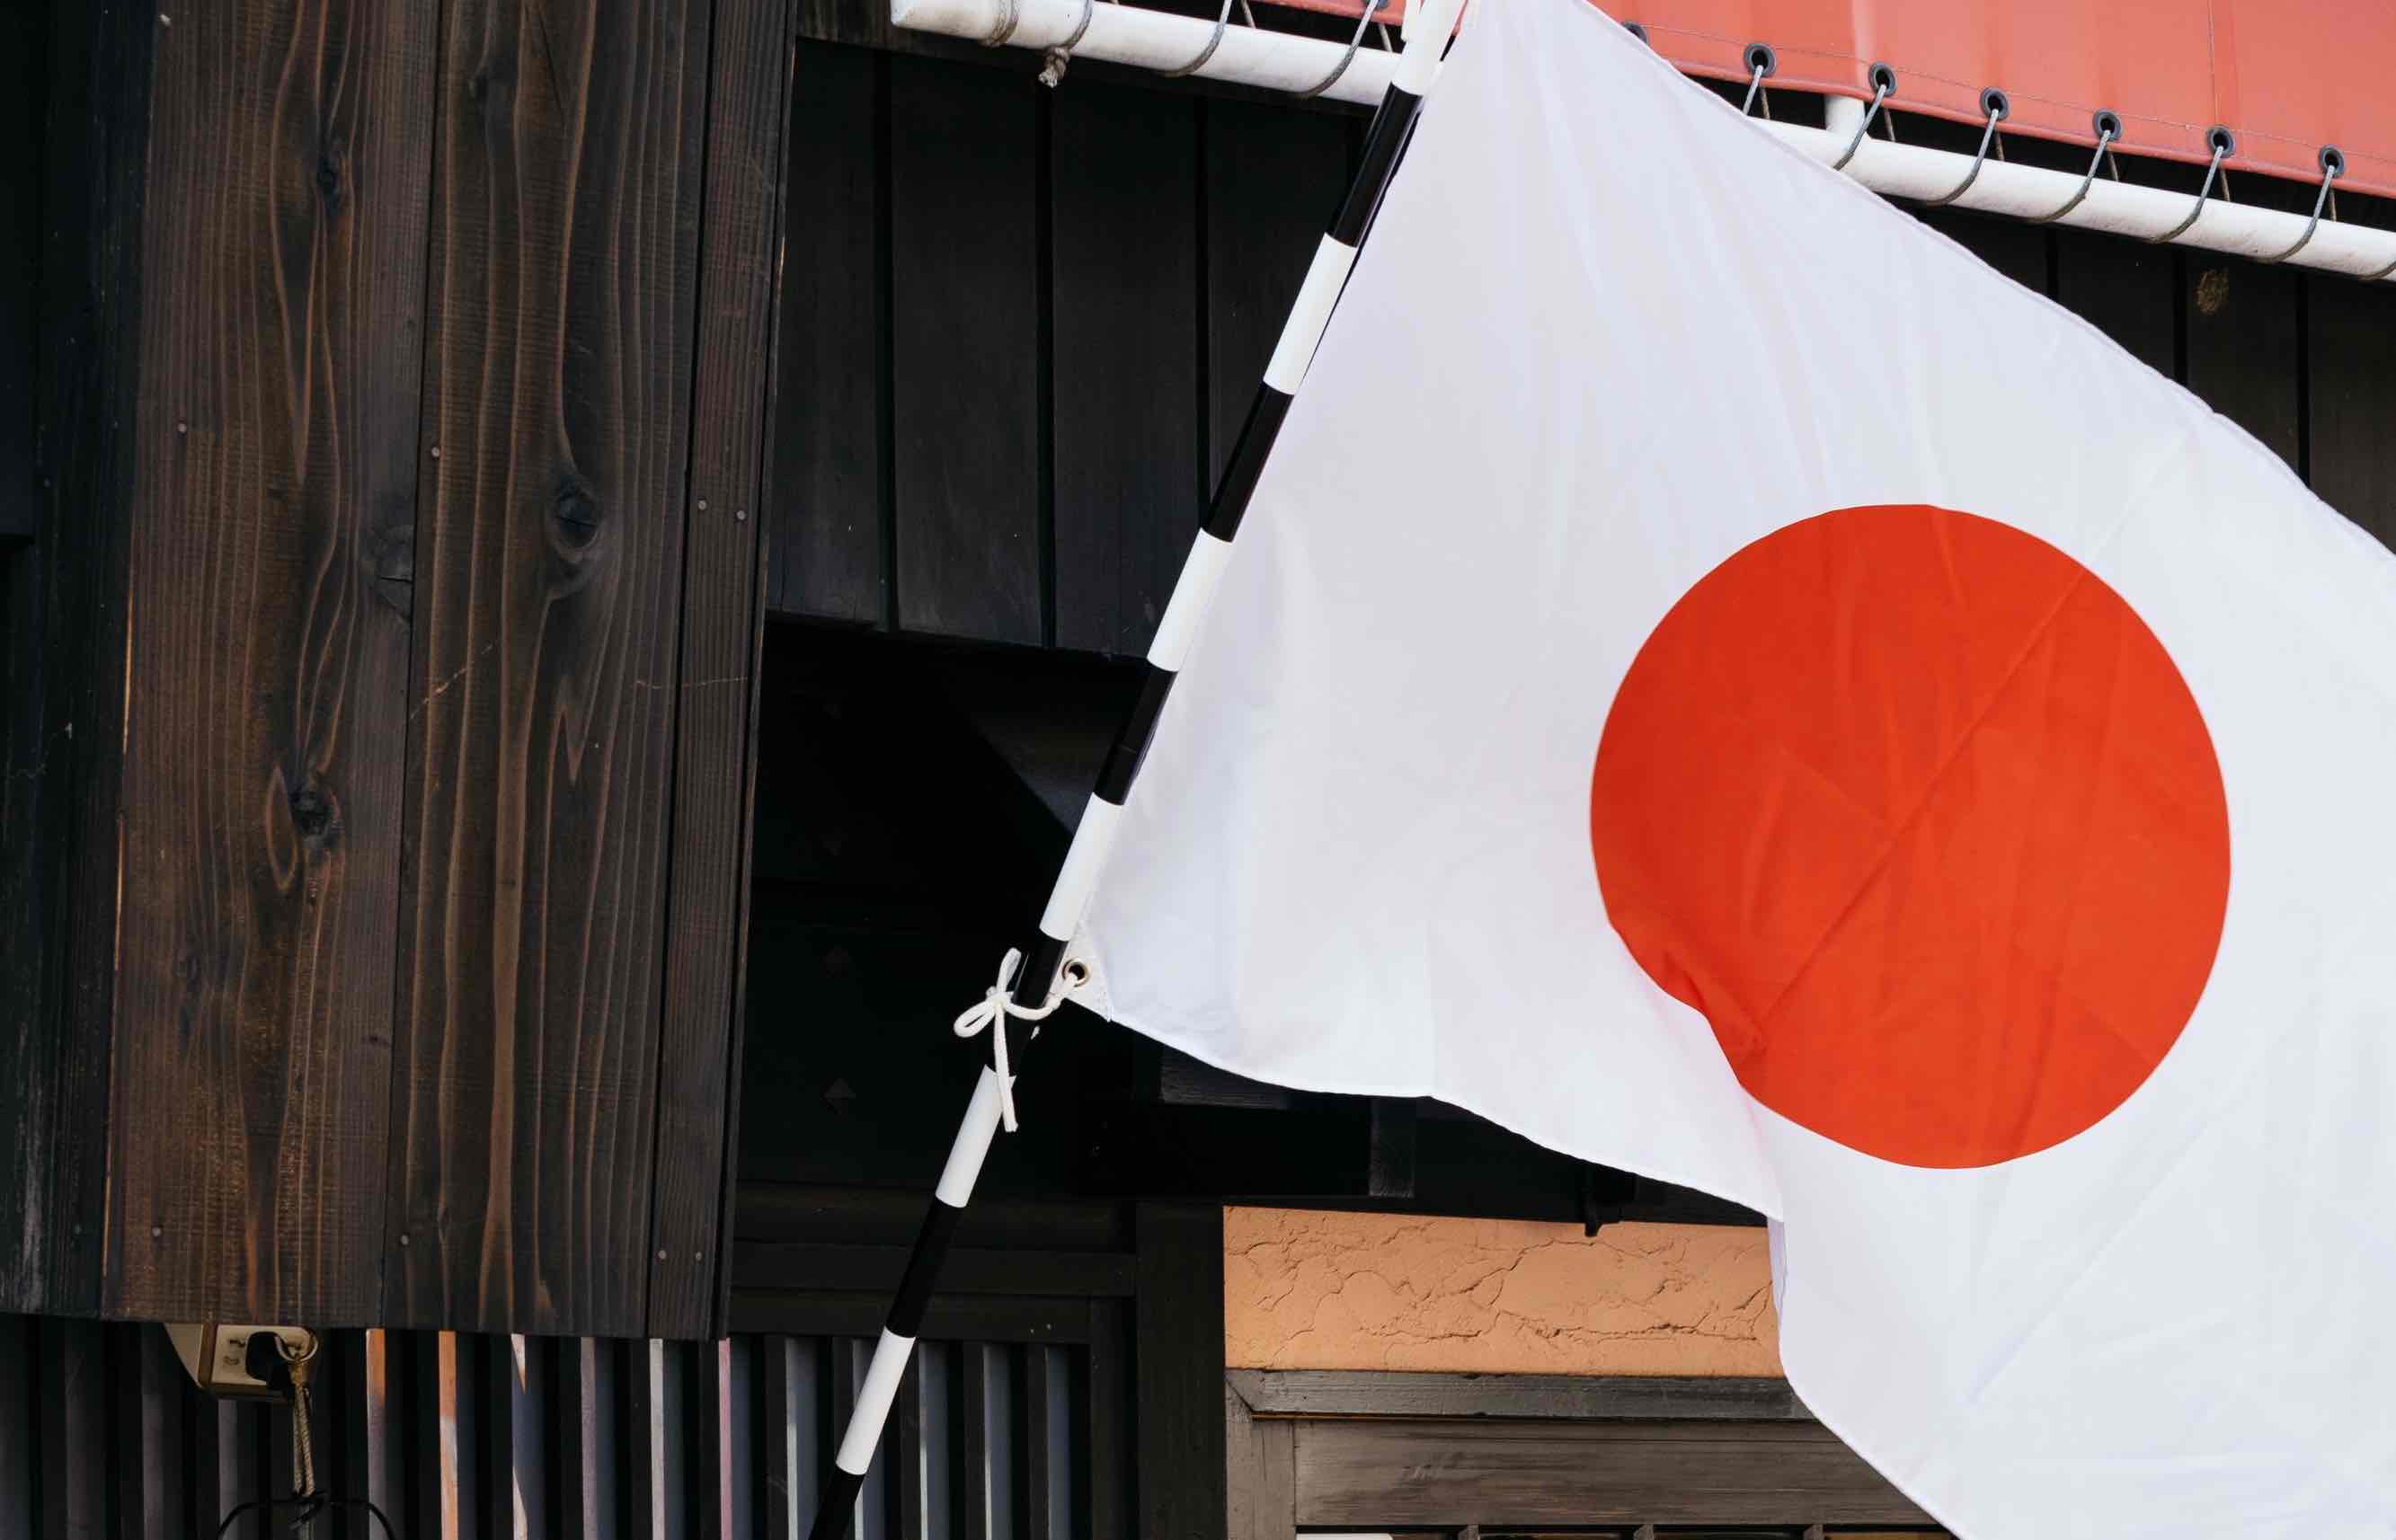 Séisme au Japon : quel est le risque et comment se préparer ?